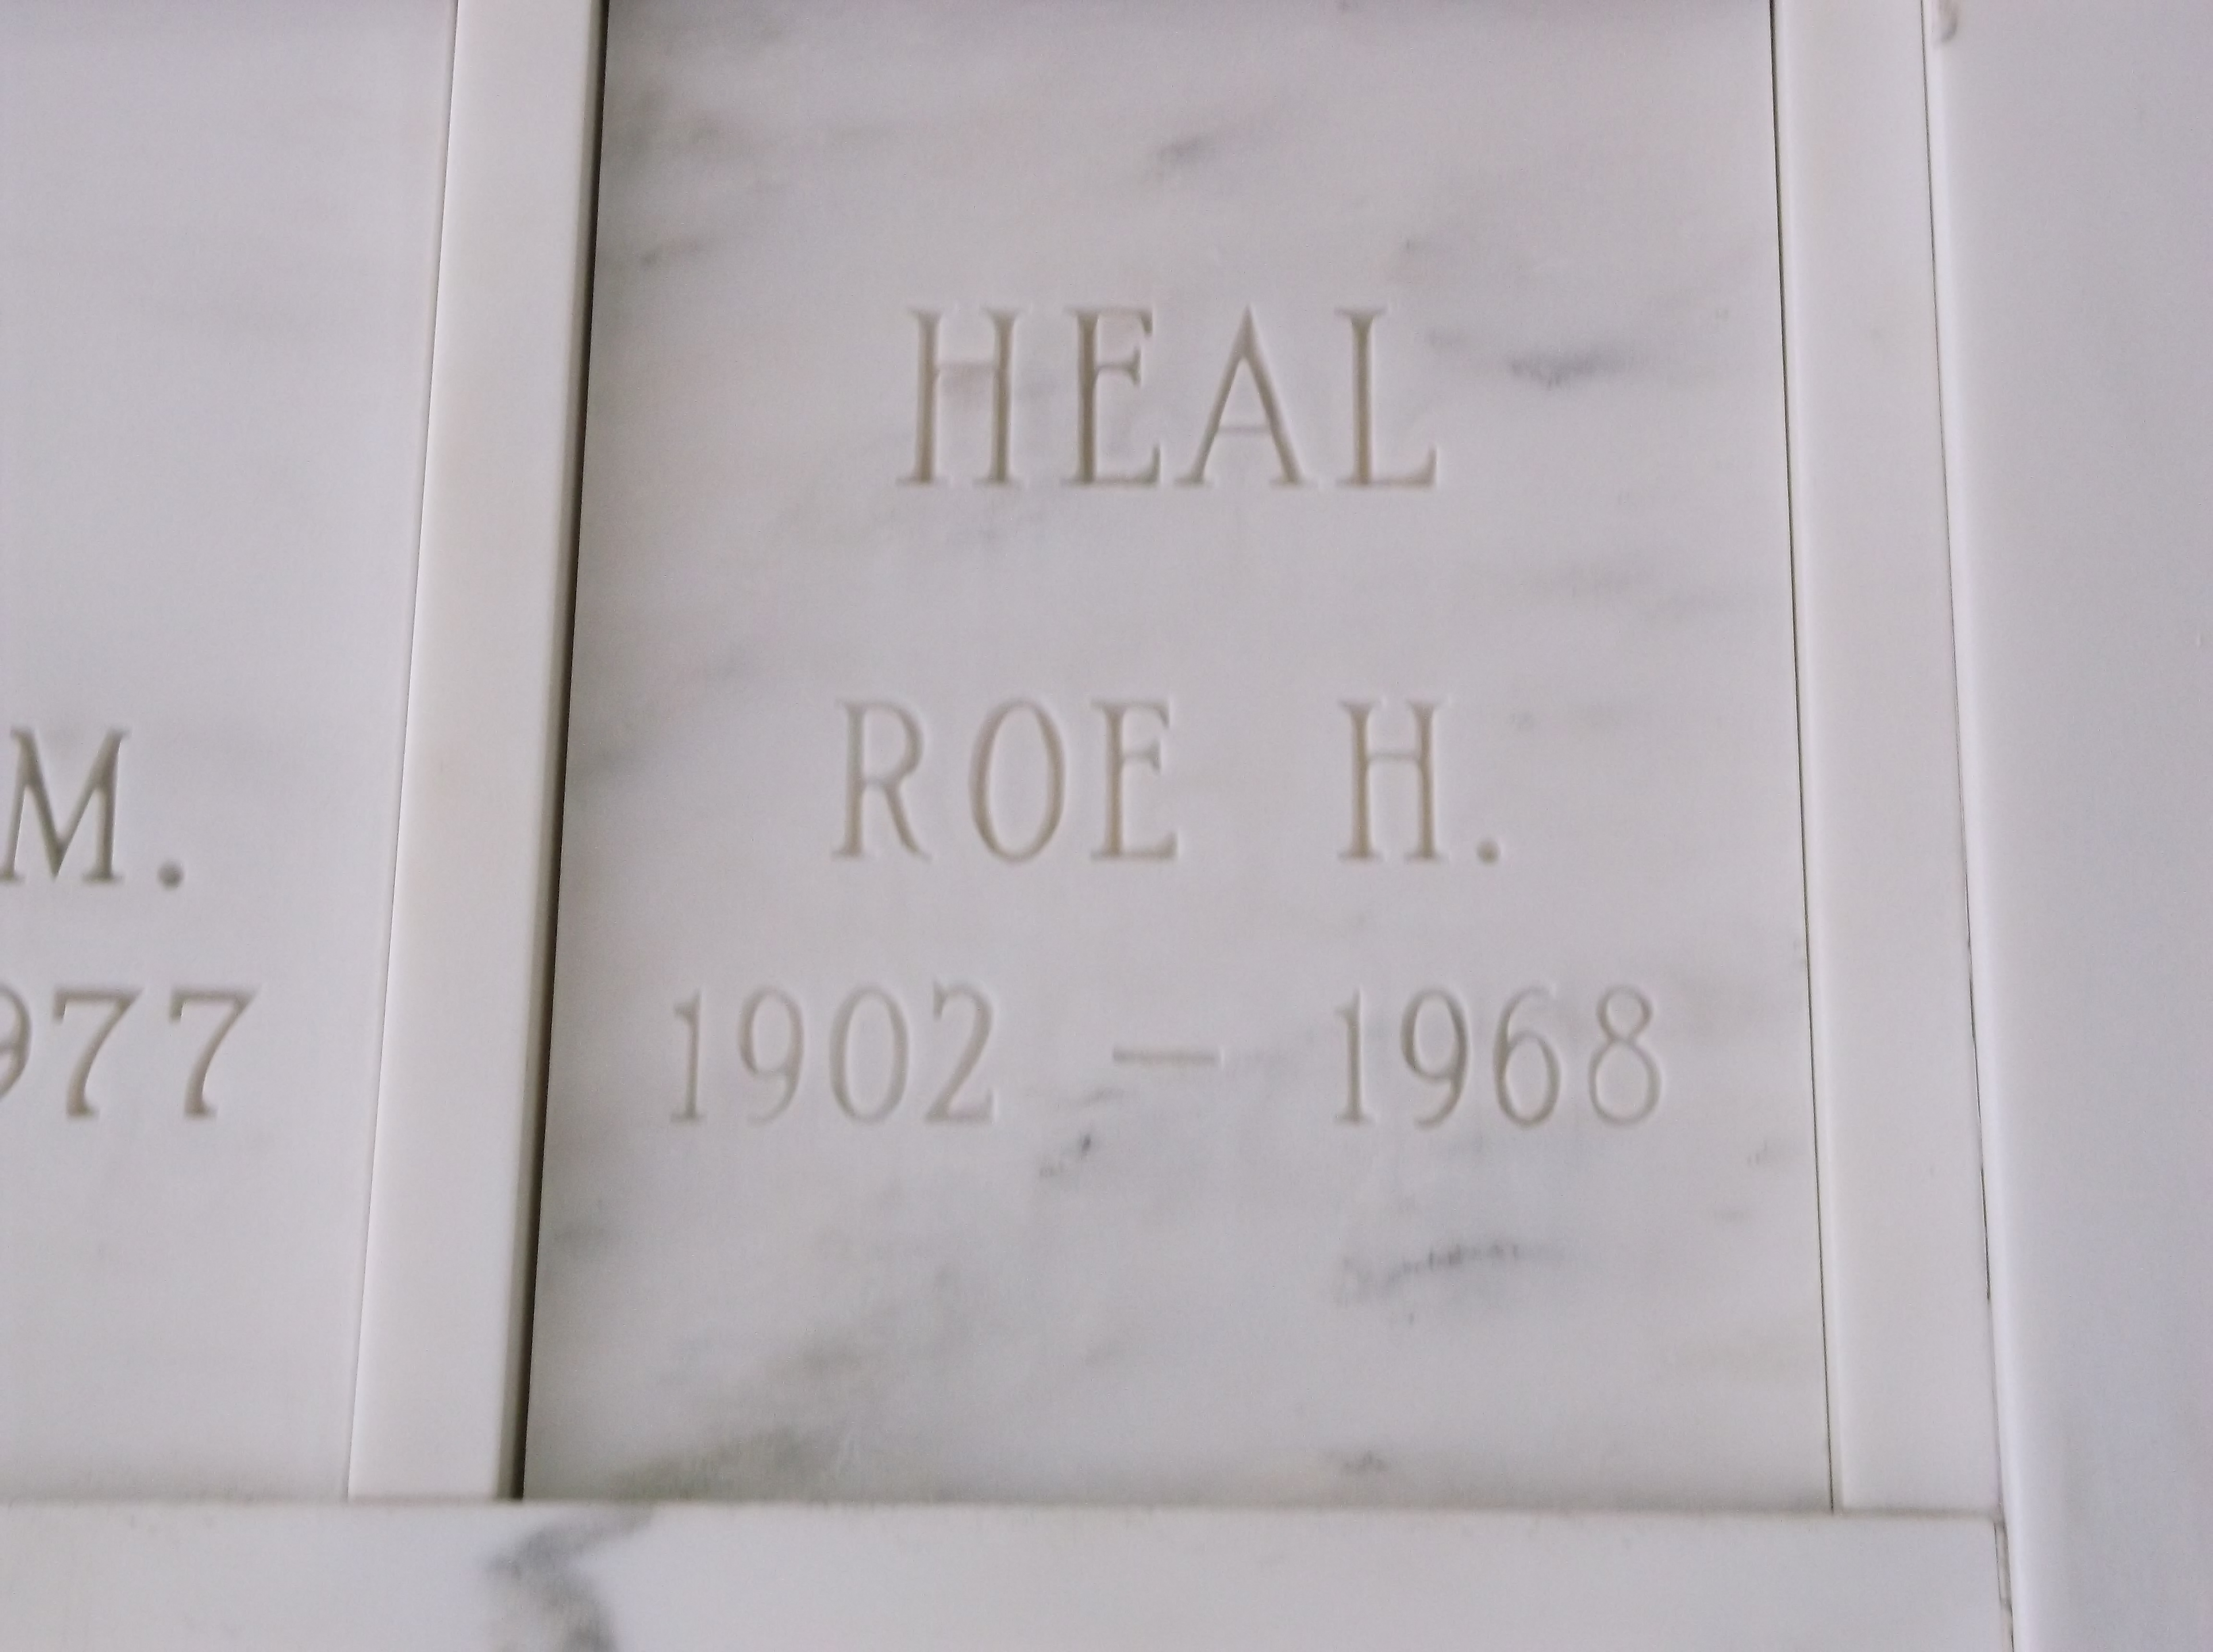 Roe H Heal